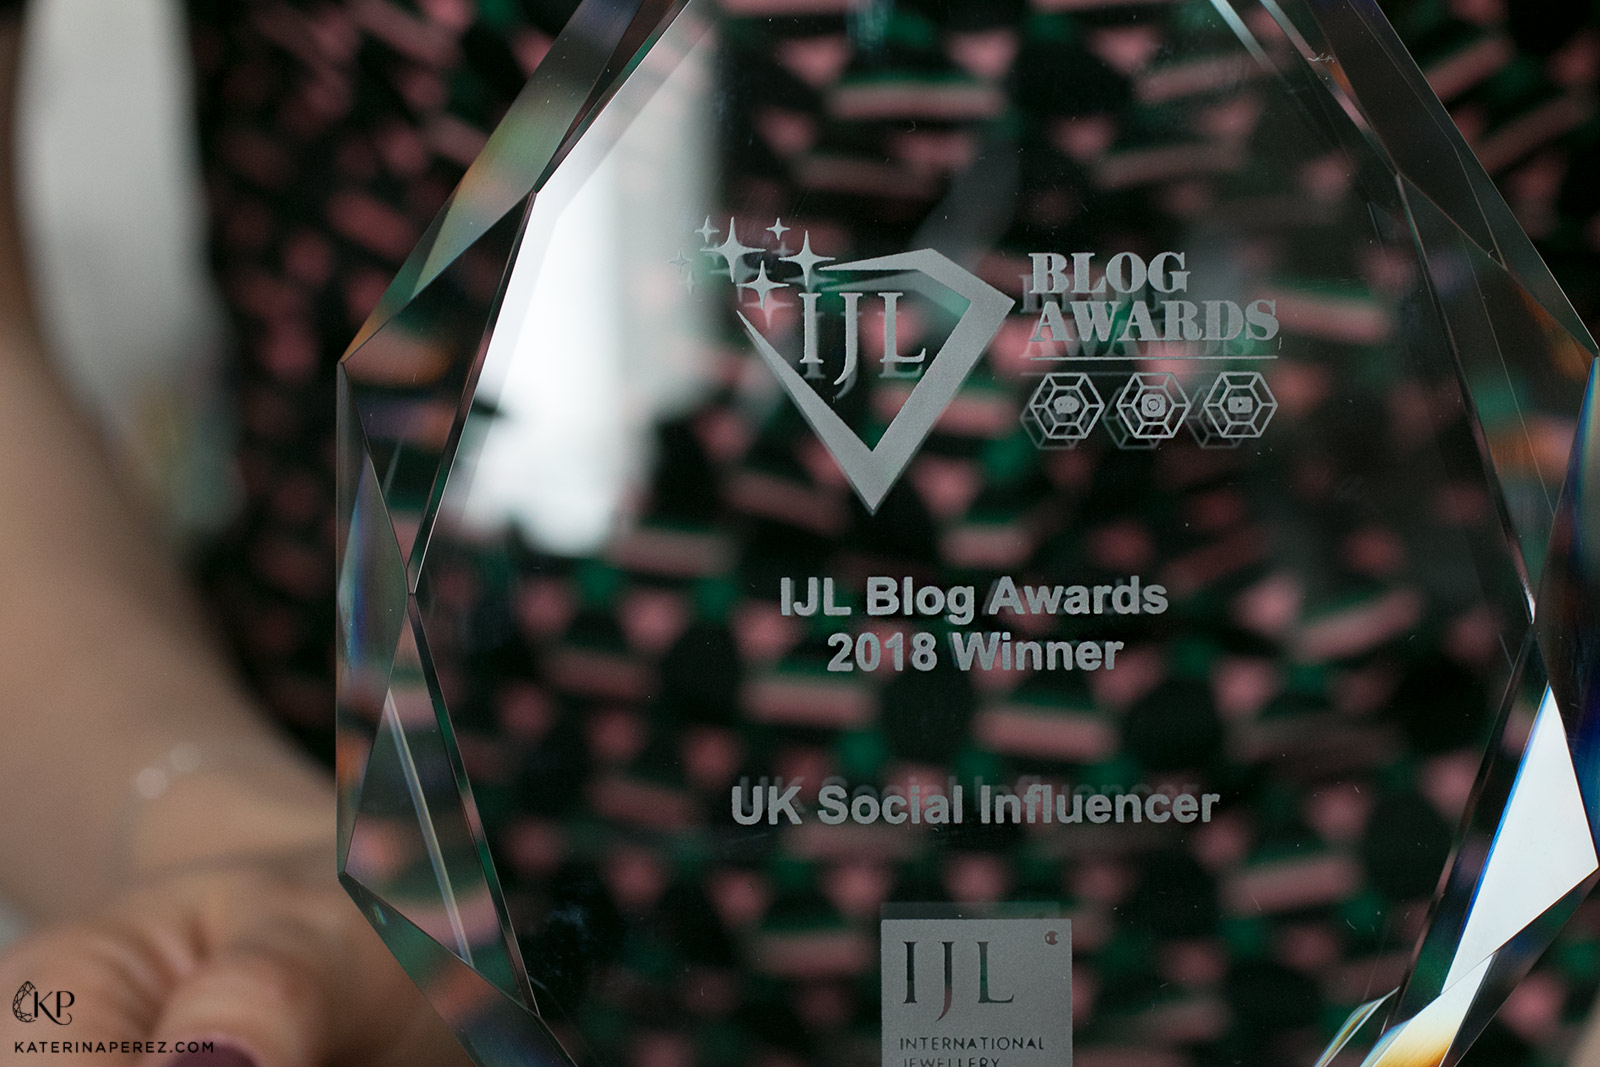 IJL awards trophy for UK social influencer